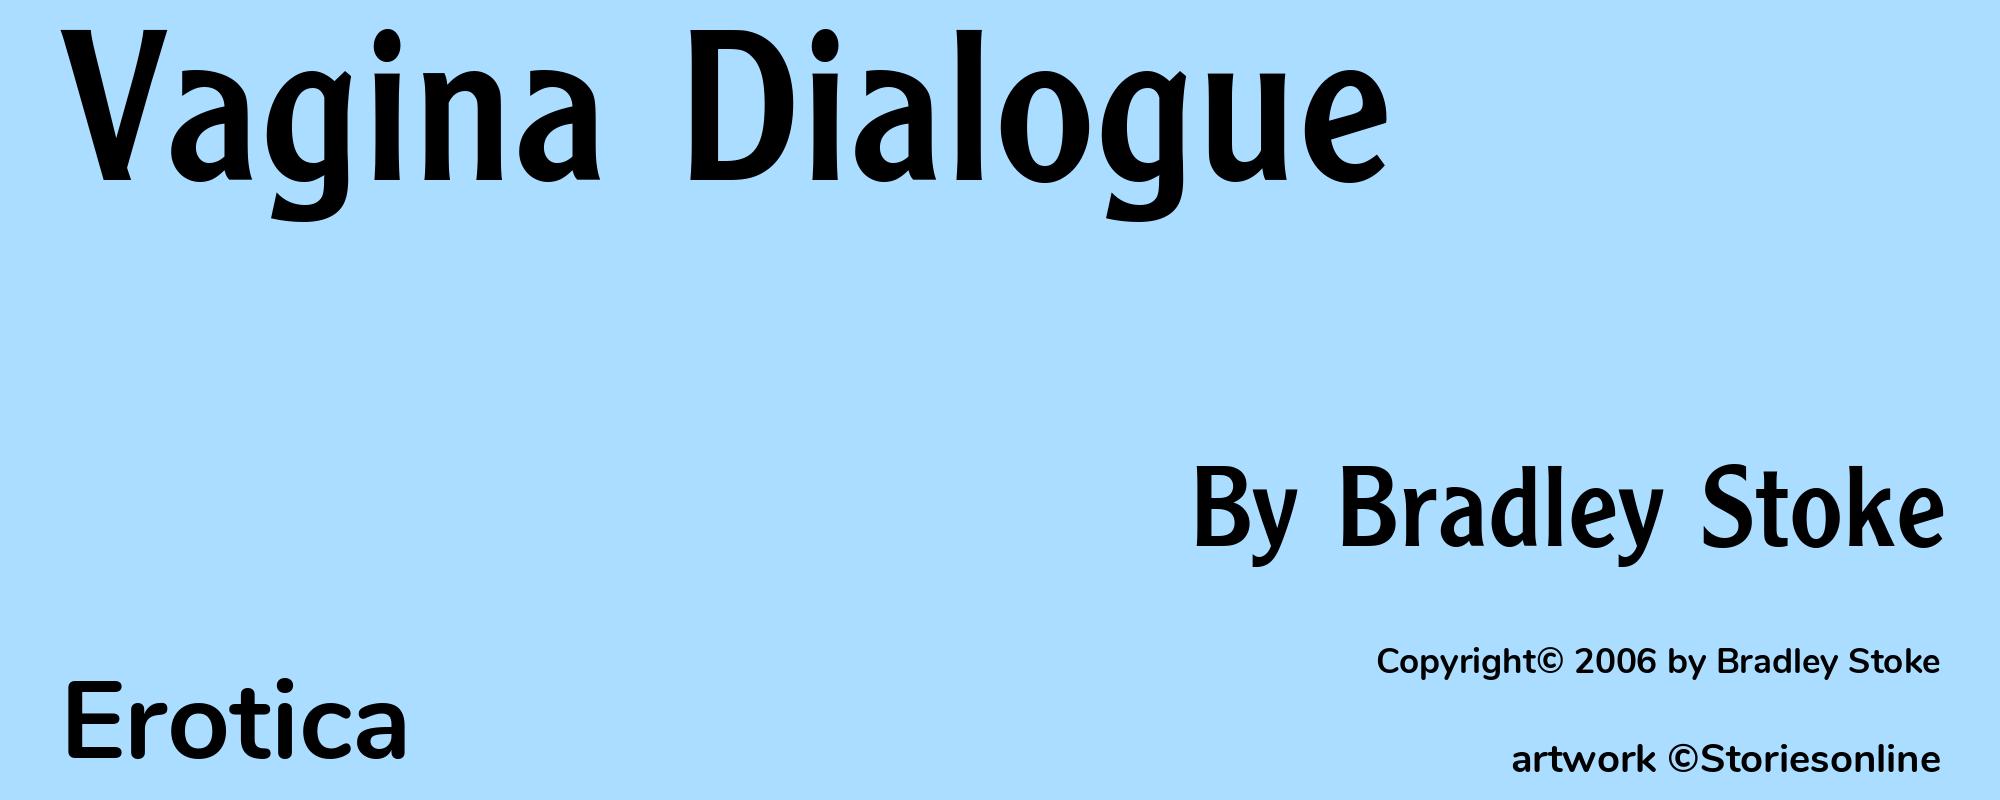 Vagina Dialogue - Cover